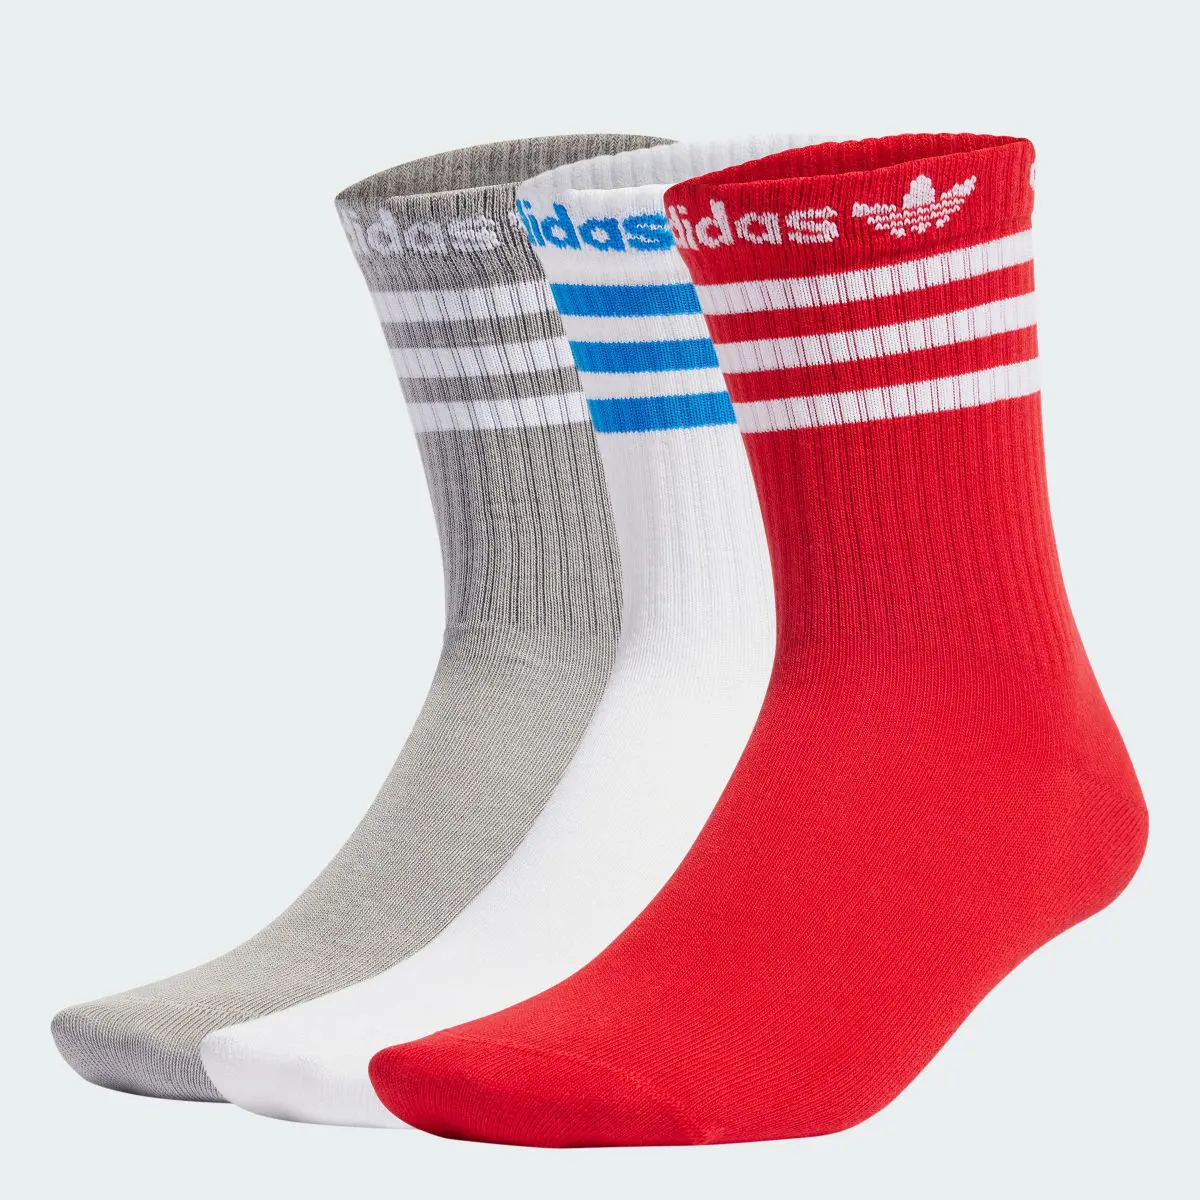 Adidas Meias de Cano Médio – 3 pares. 1